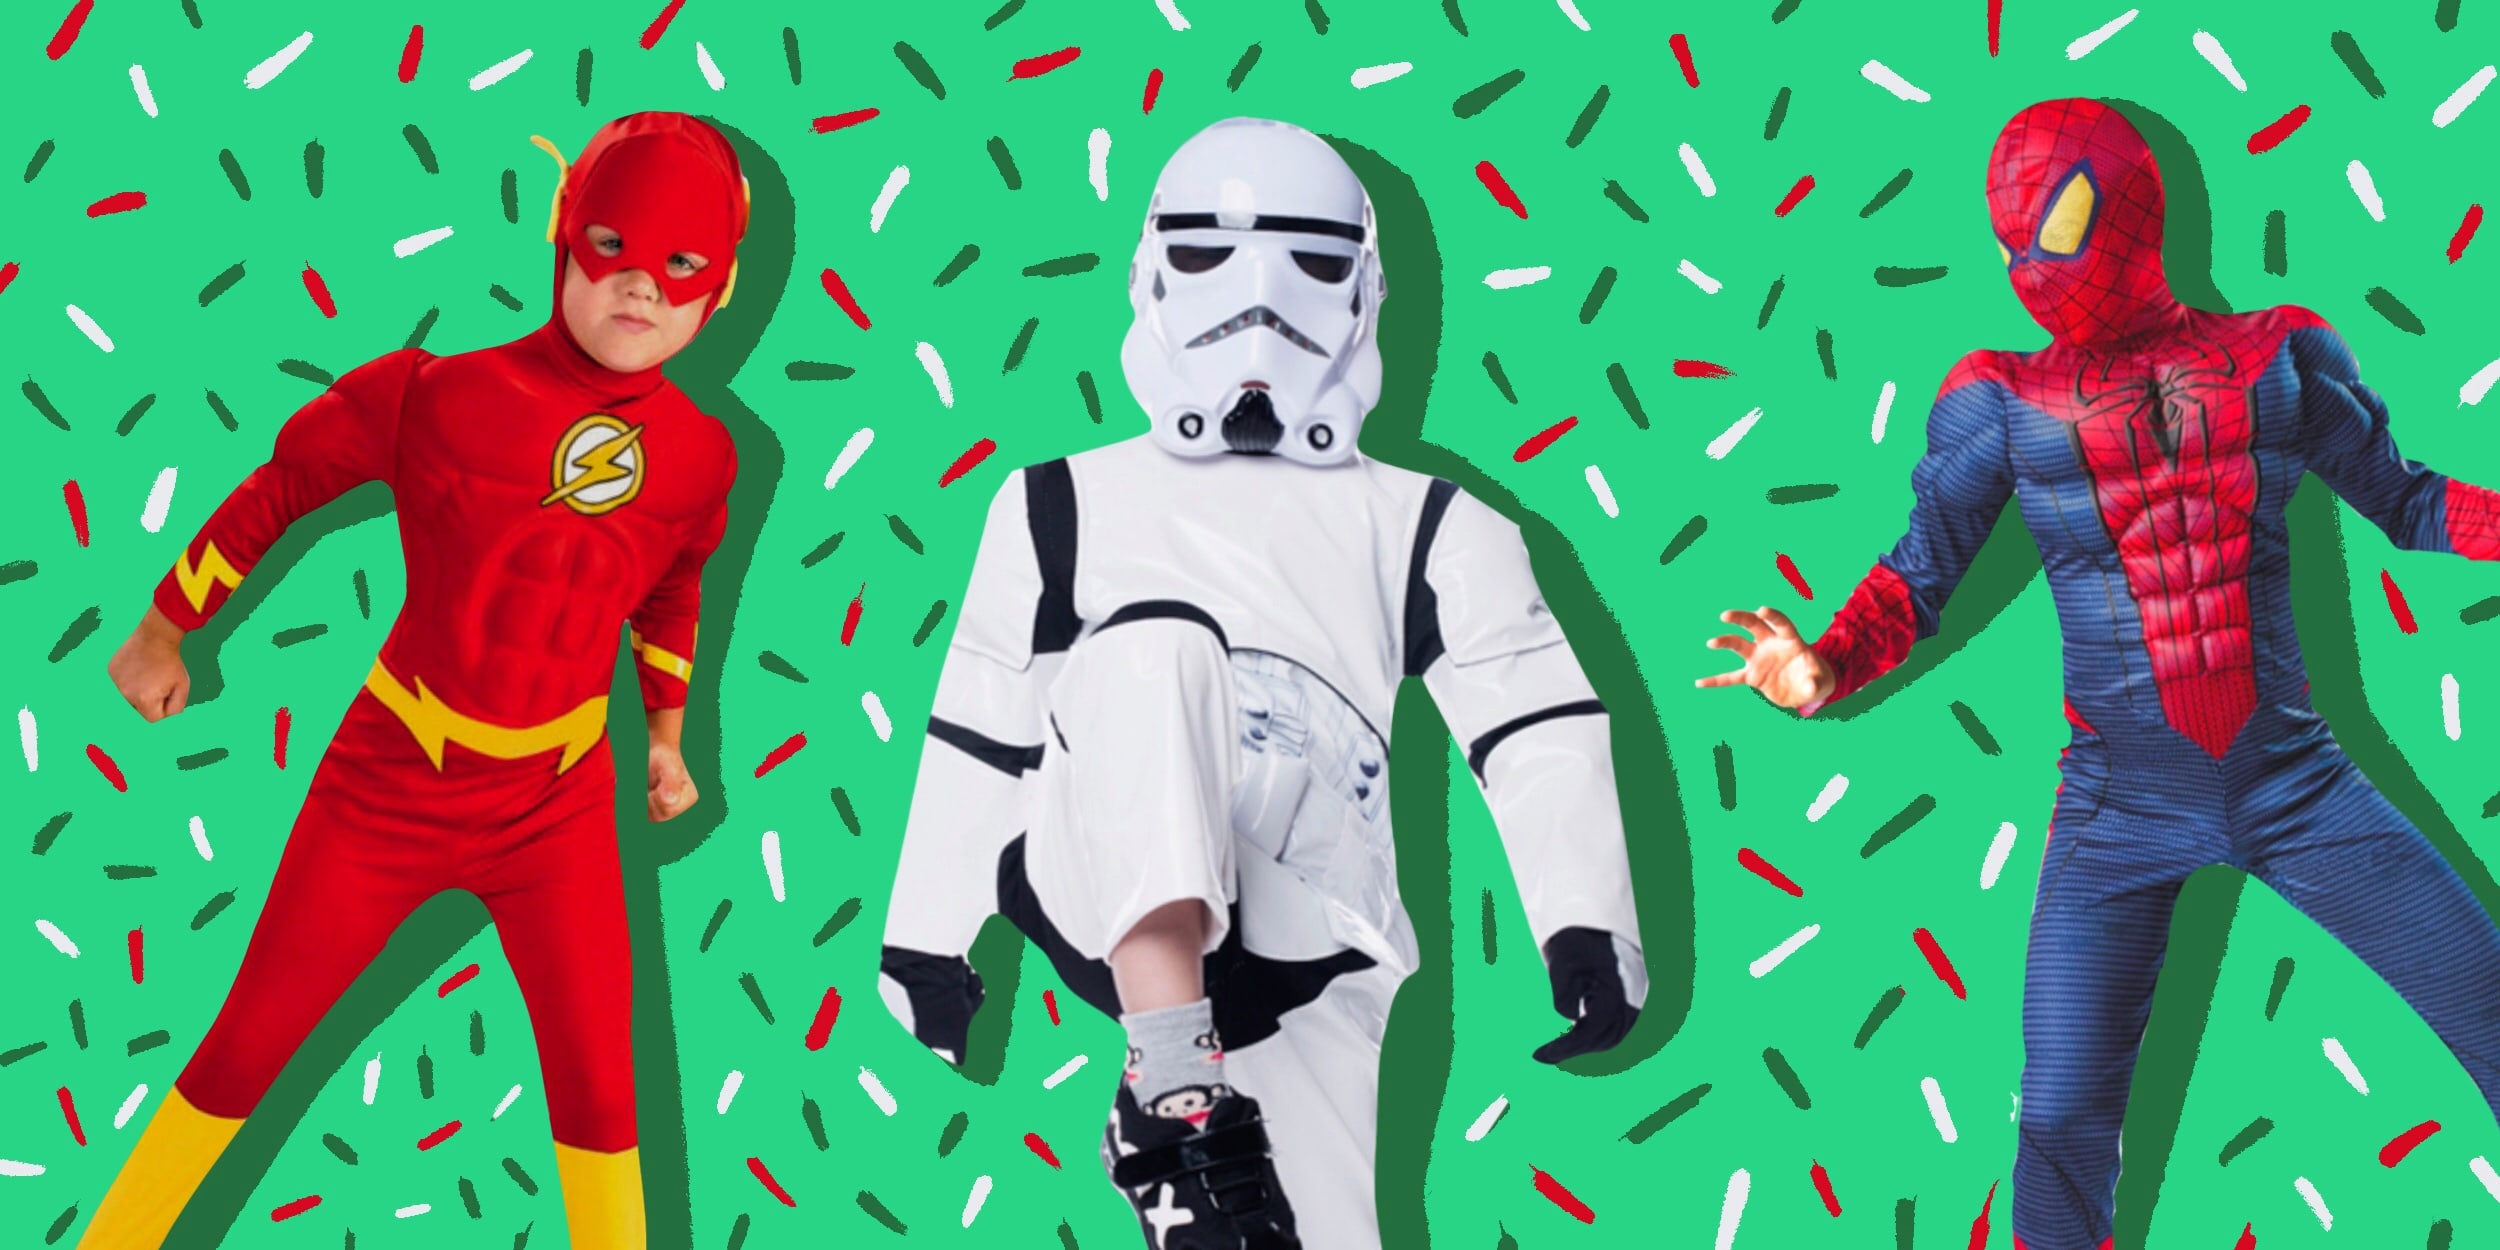 Дешево и просто: делаем новогодний костюм для ребенка своими руками